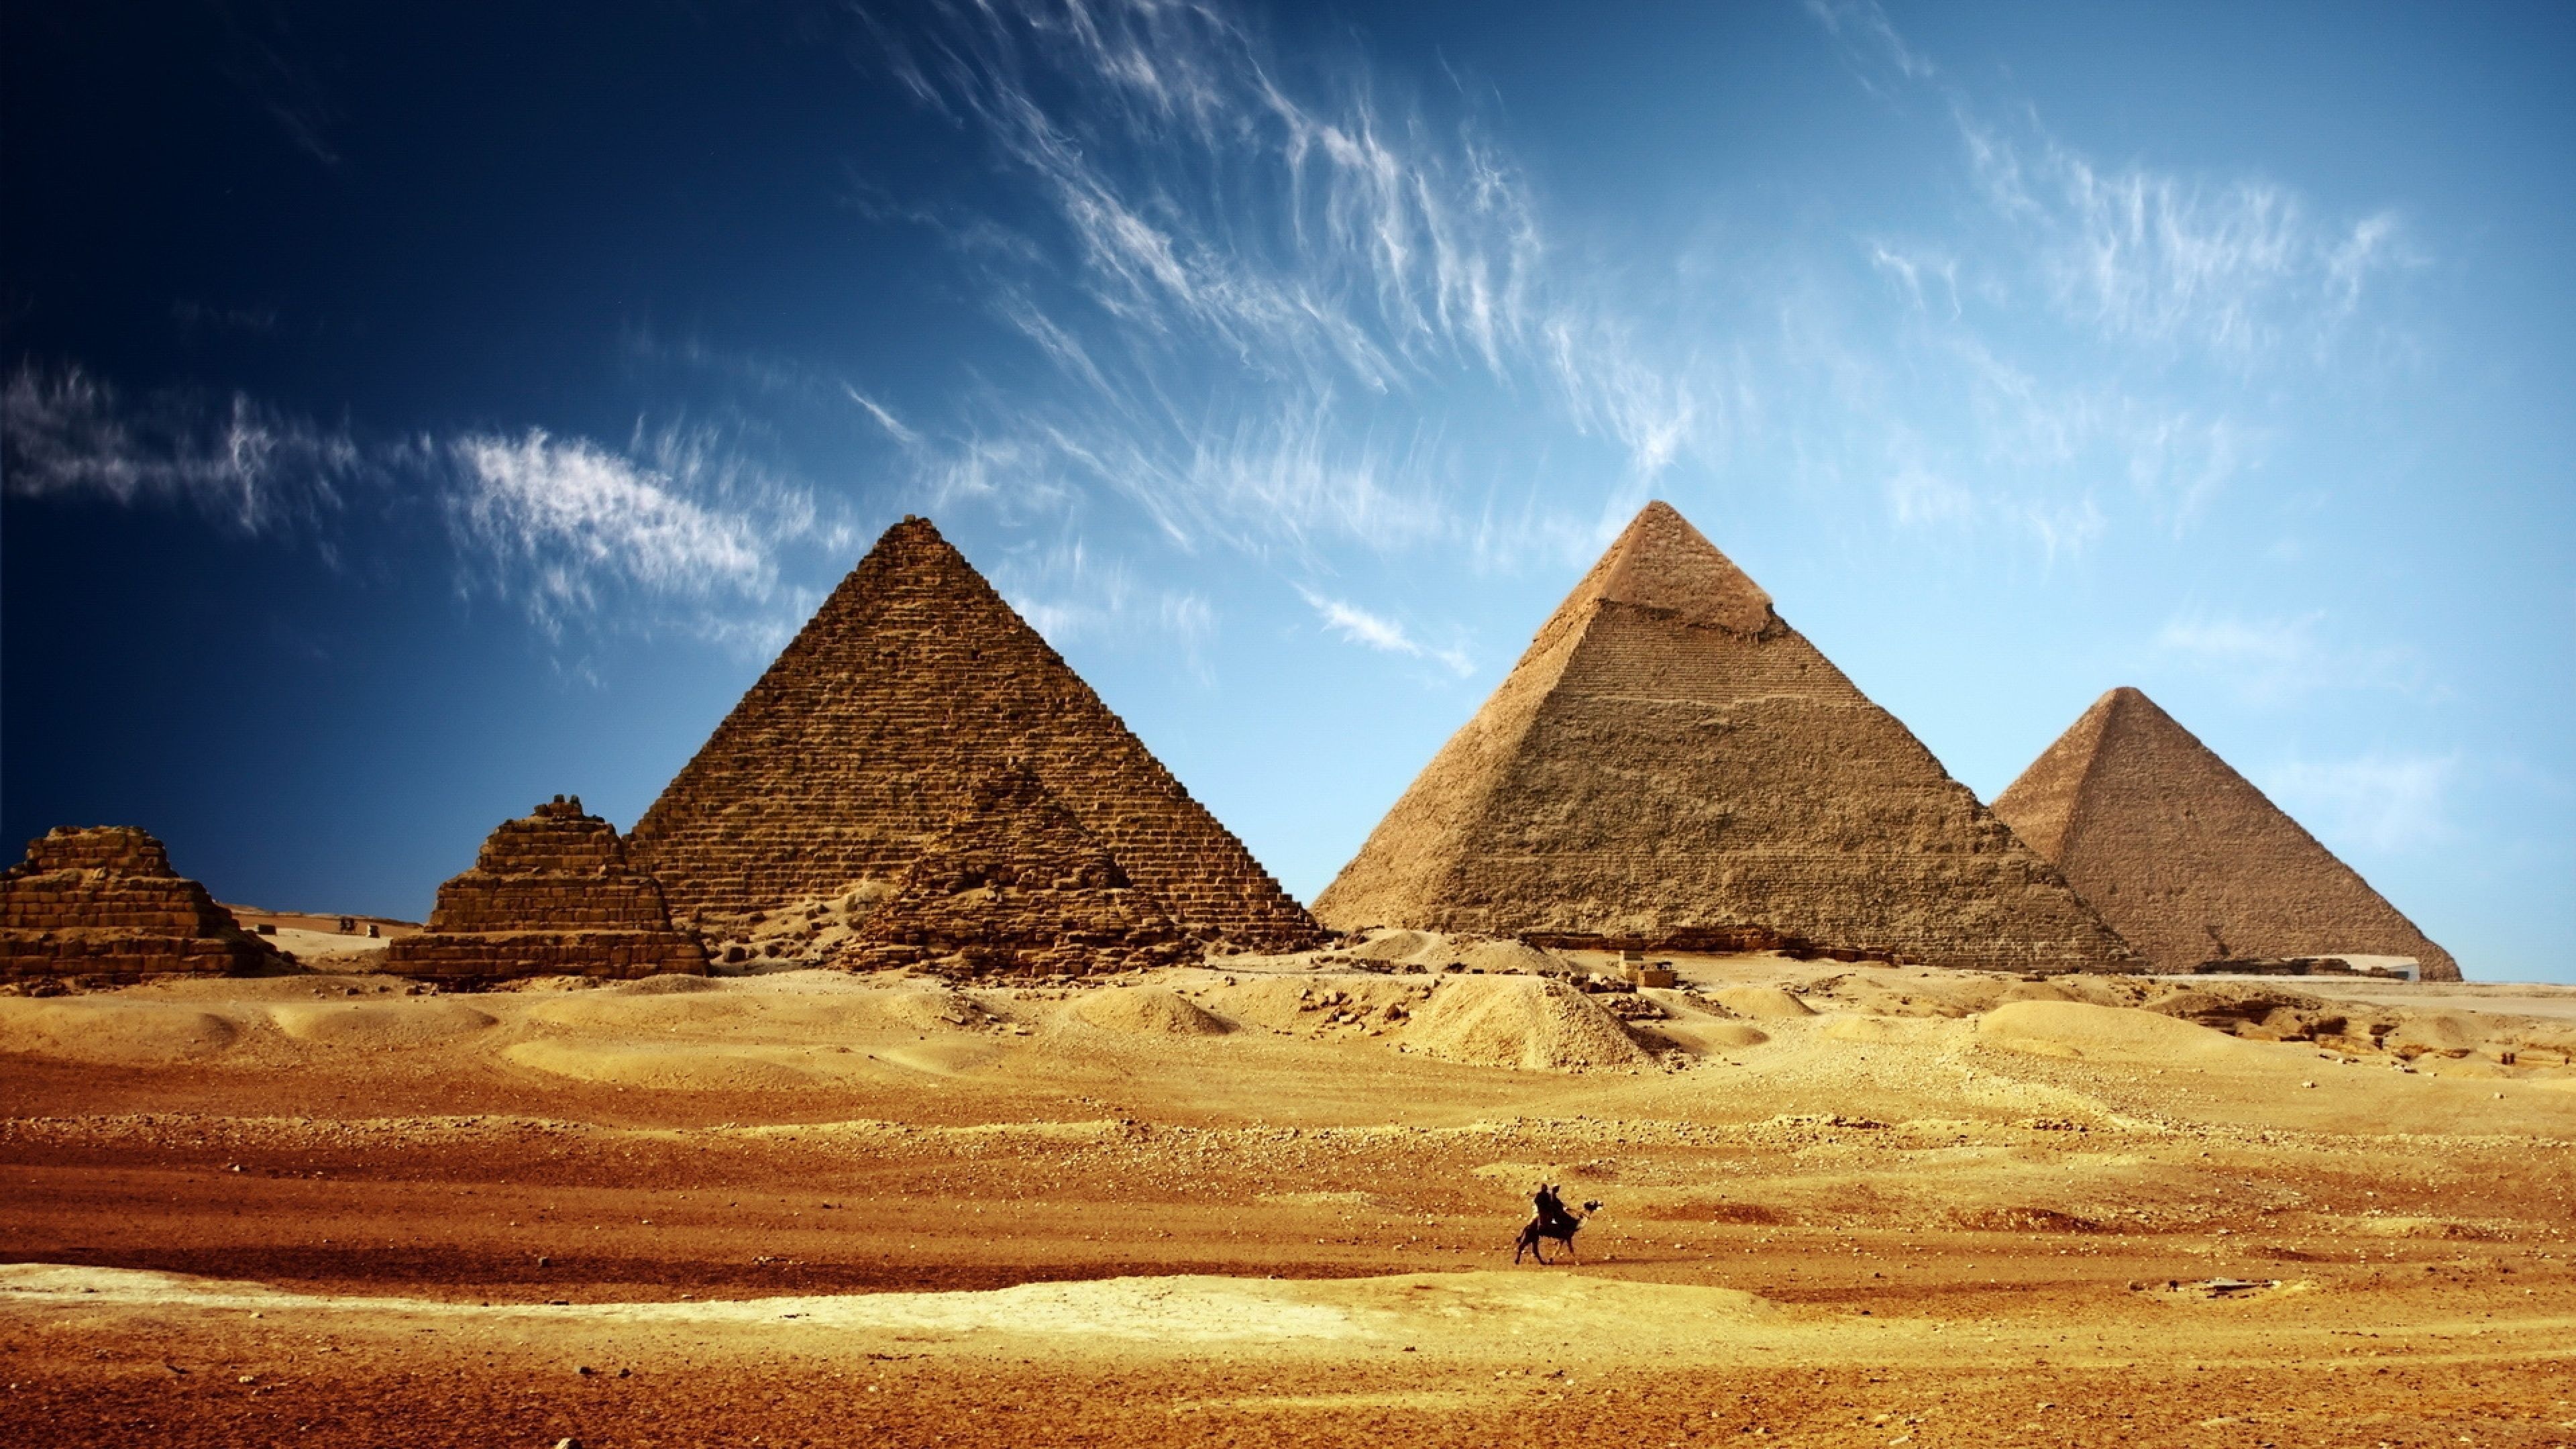 Egypt iPhone Wallpaper | Egypt, Ancient egypt, Pyramids